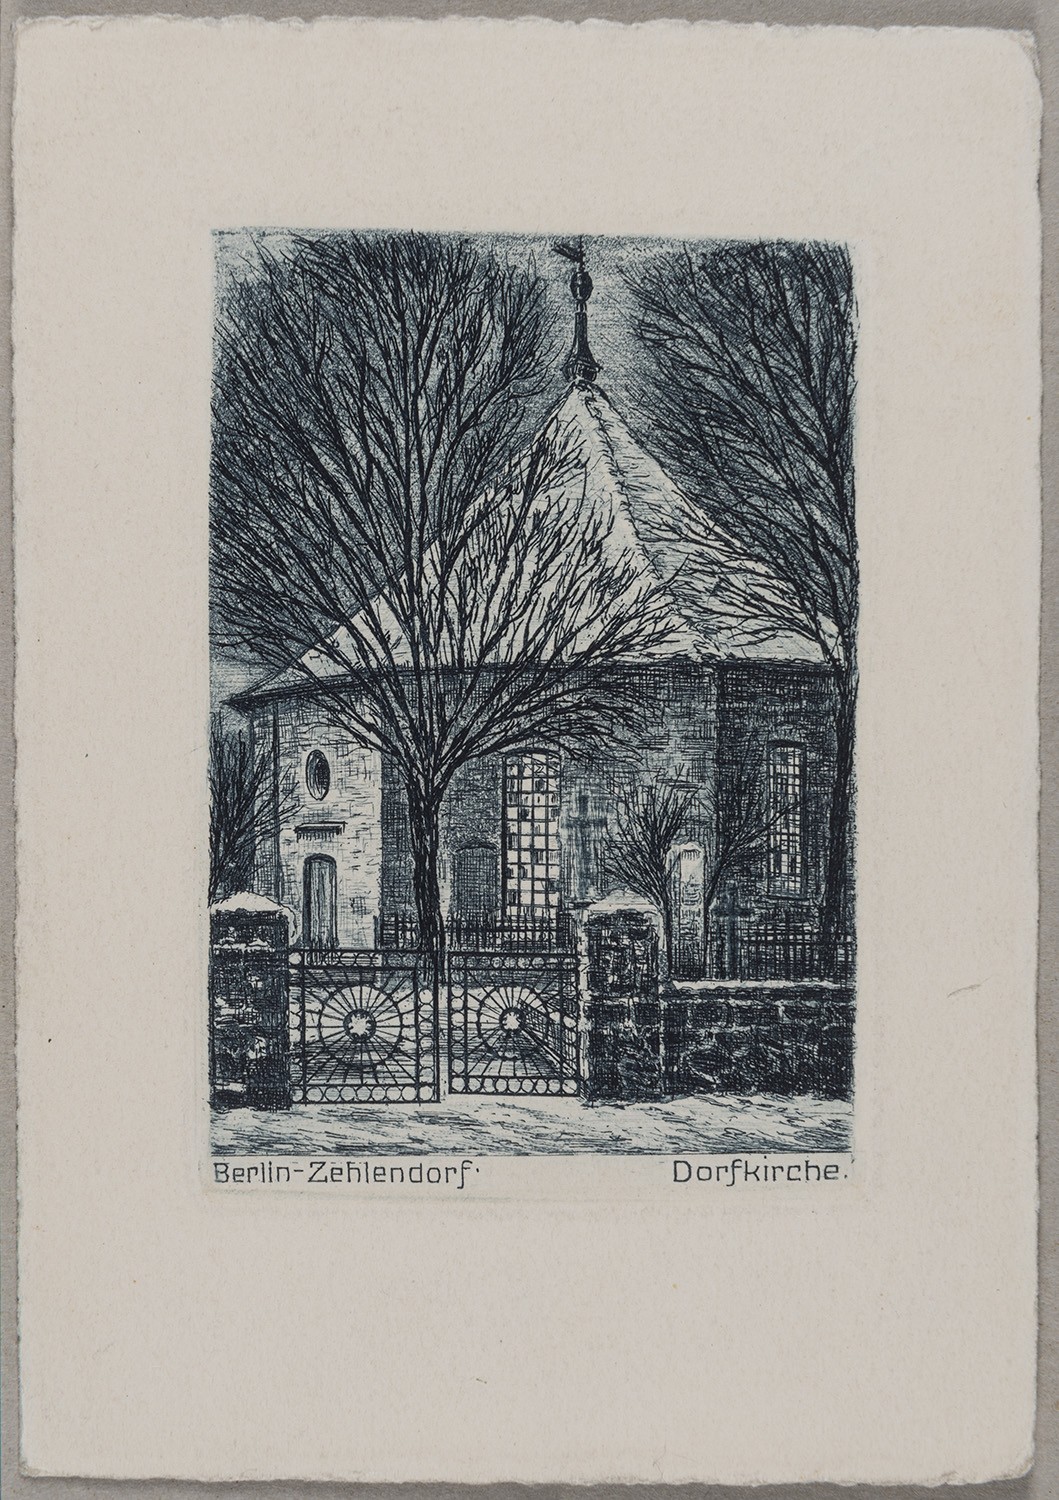 Berlin-Zehlendorf: Dorfkirche Zehlendorf von Südosten (Landesgeschichtliche Vereinigung für die Mark Brandenburg e.V., Archiv CC BY)